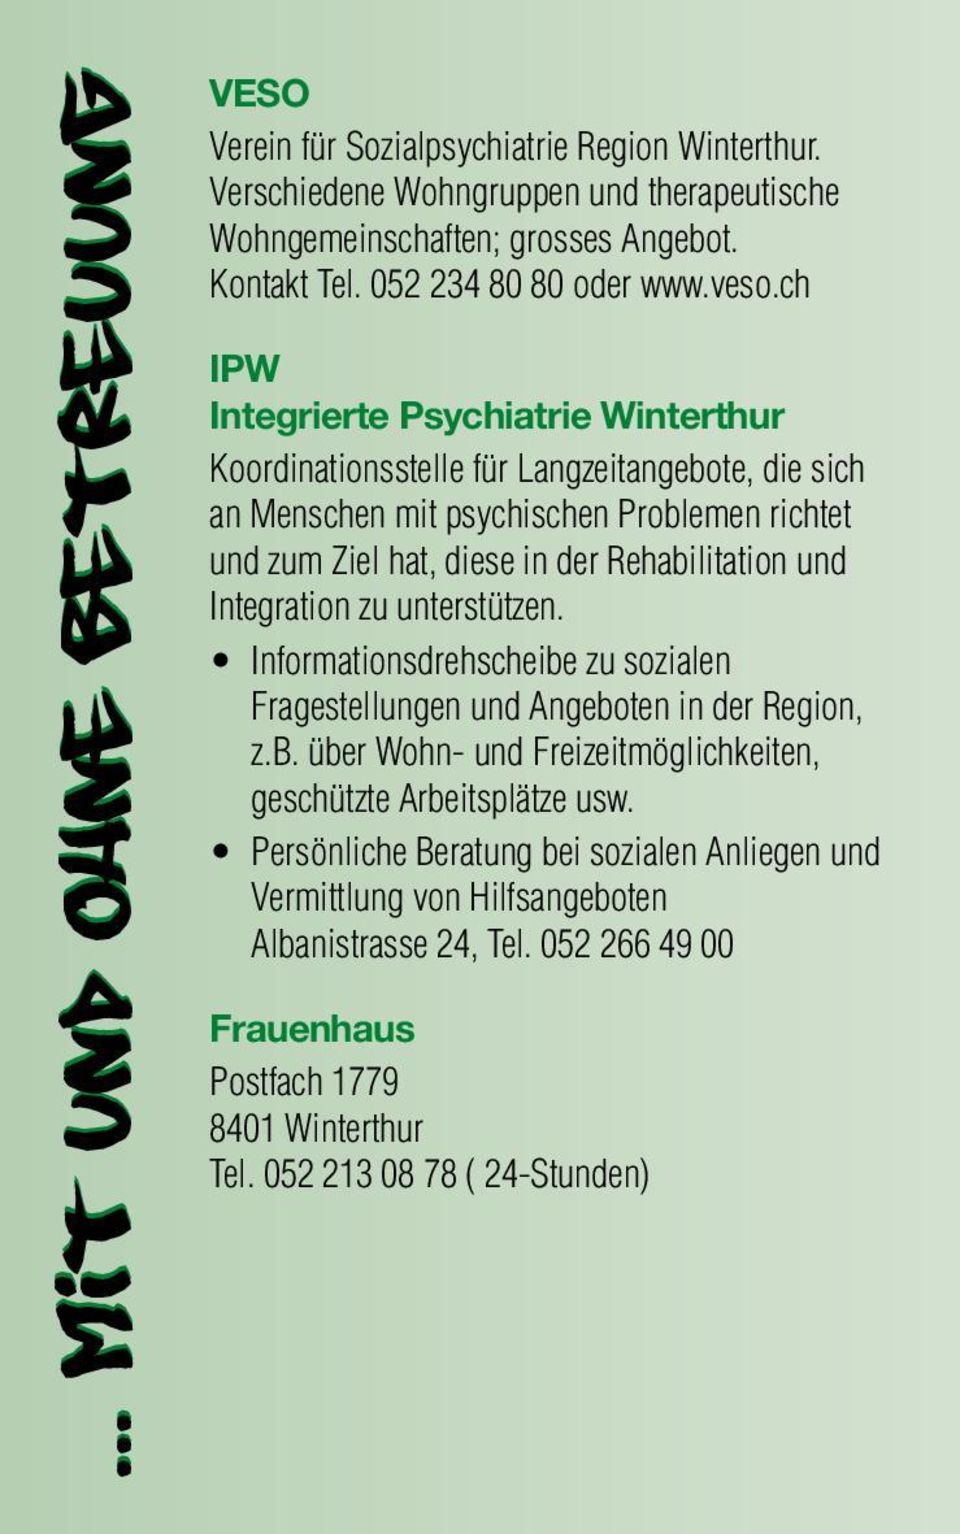 ch IPW Integrierte Psychiatrie Winterthur Koordinationsstelle für Langzeitangebote, die sich an Menschen mit psychischen Problemen richtet und zum Ziel hat, diese in der Rehabilitation und